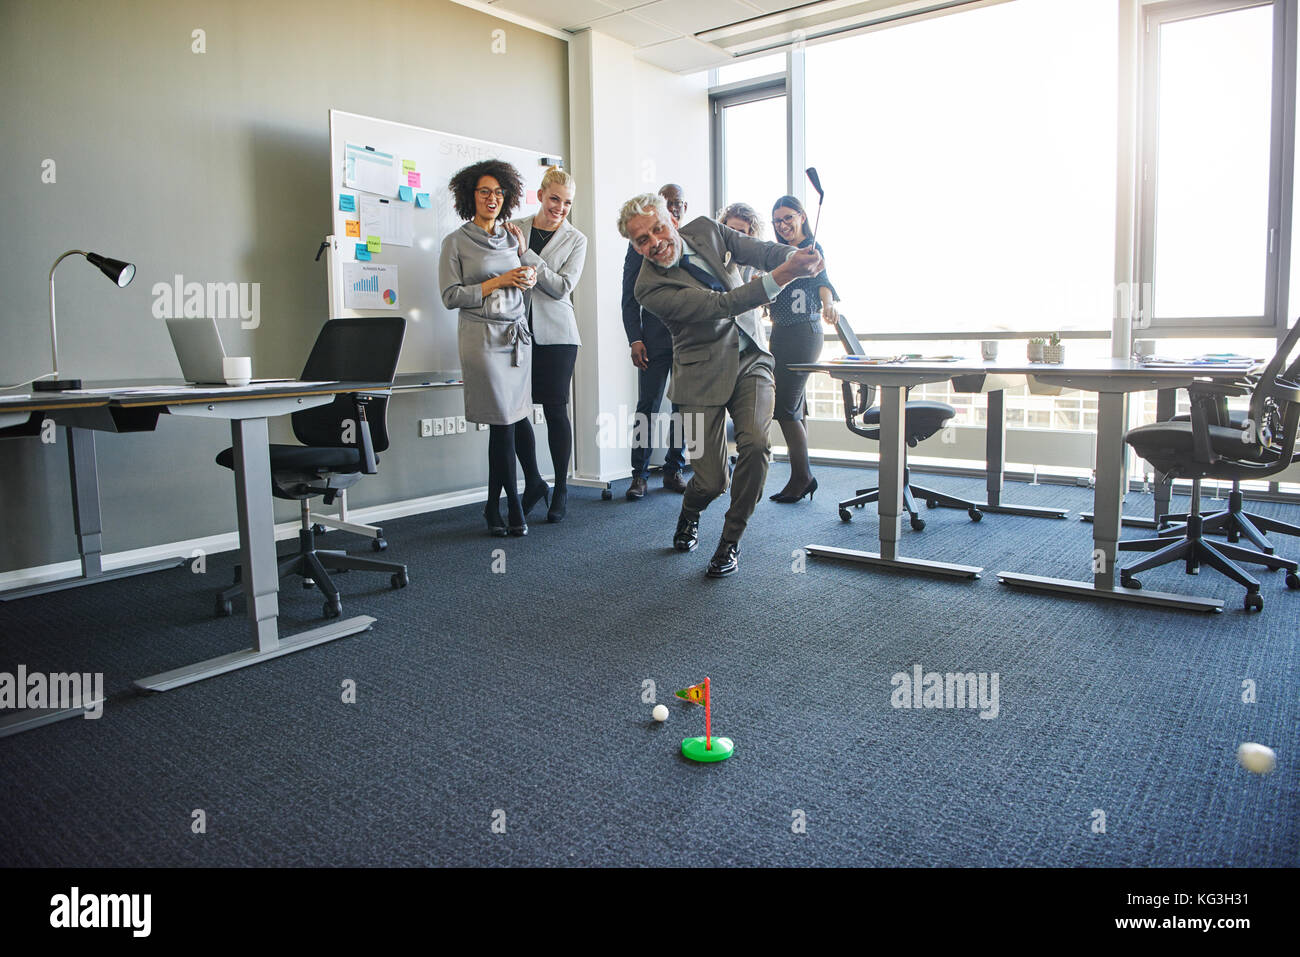 Vielfältige Gruppe von Lachen Mitarbeiter beobachten ein reifer Kollege Schwingen einer Toy Golf Club während einer Übung in einem modernen Büro Stockfoto